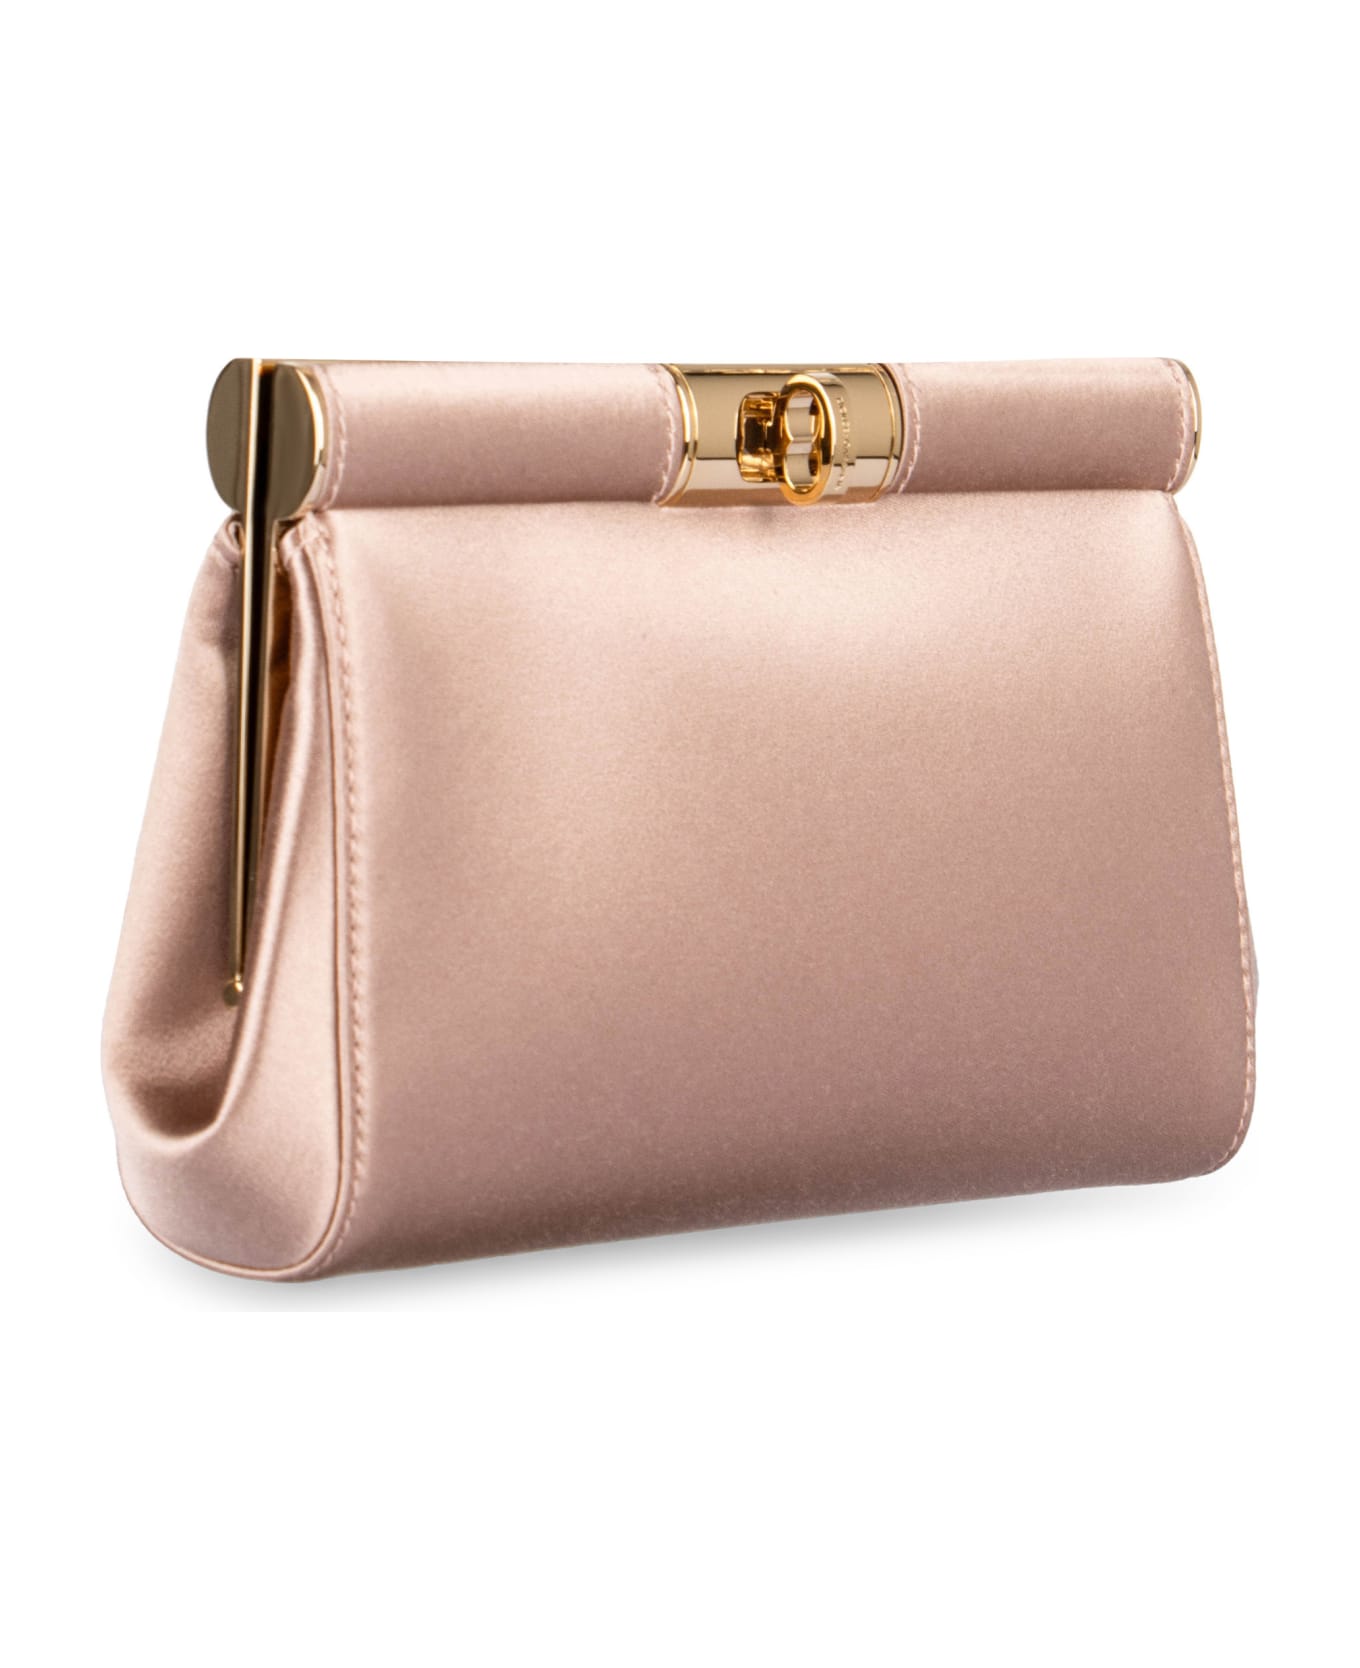 Dolce & Gabbana Marlene Satin Shoulder Bag - Pink